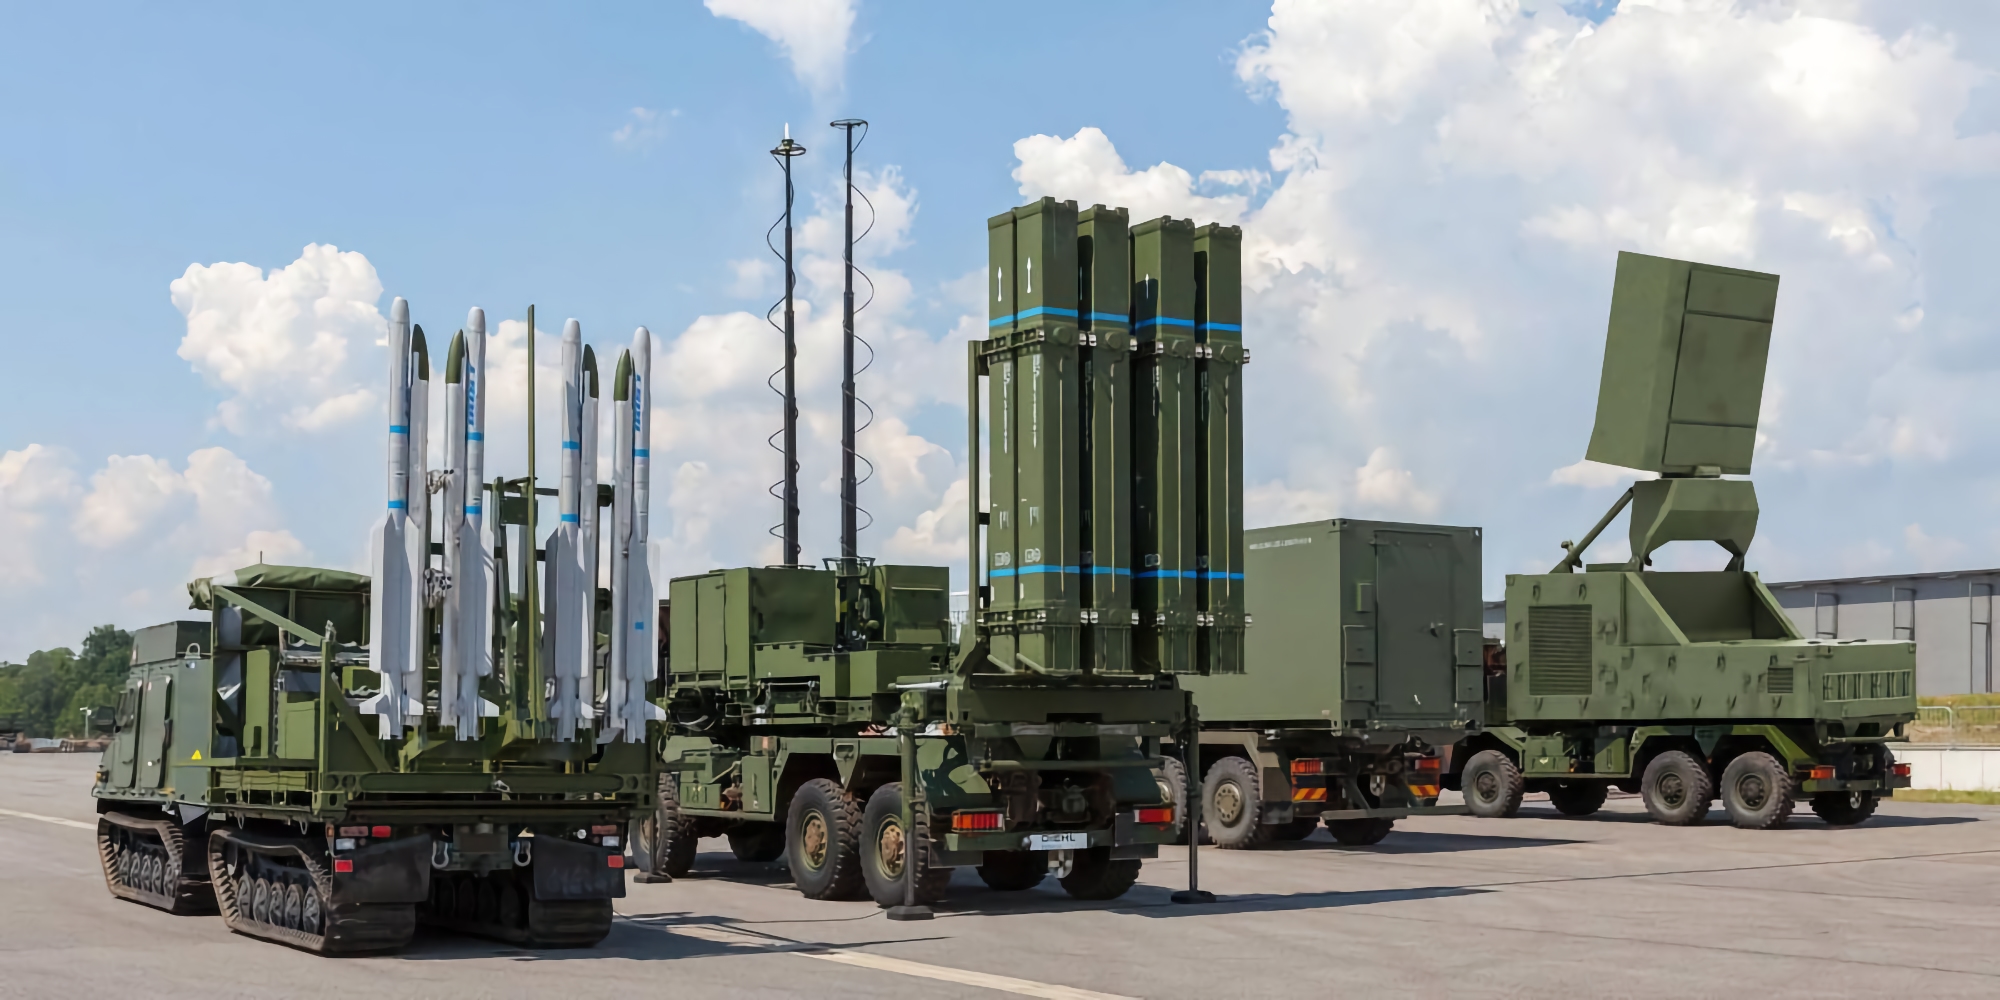 Ukraina kupi od Niemiec 10 IRIS-T: to najnowocześniejszy system obrony powietrznej